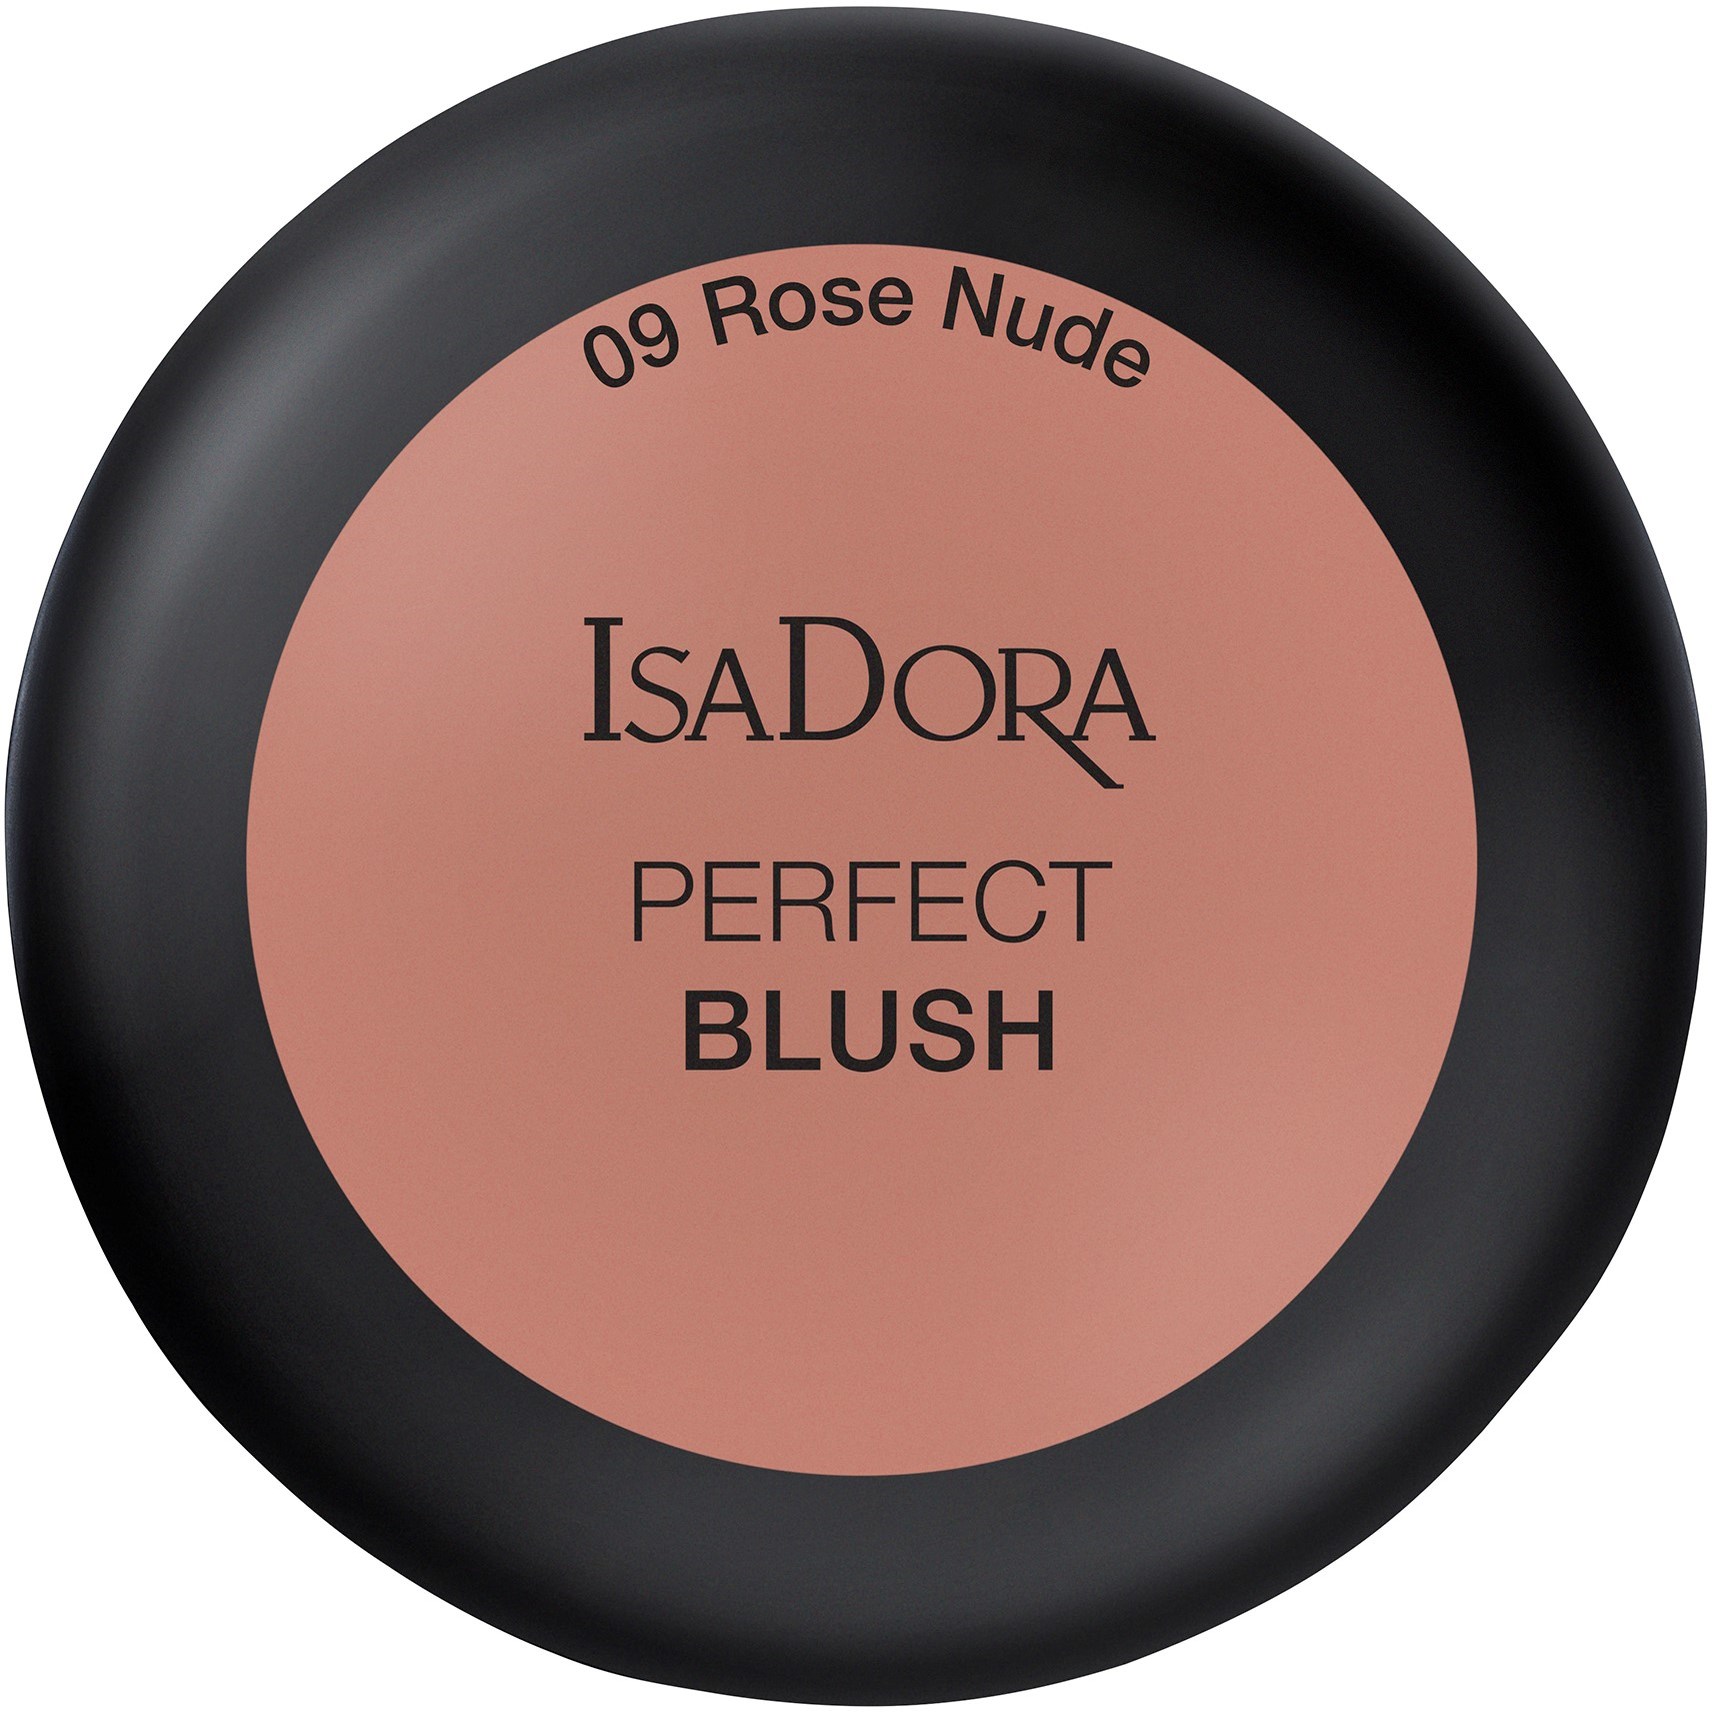 Läs mer om IsaDora Perfect Blush 9 Rose Nude